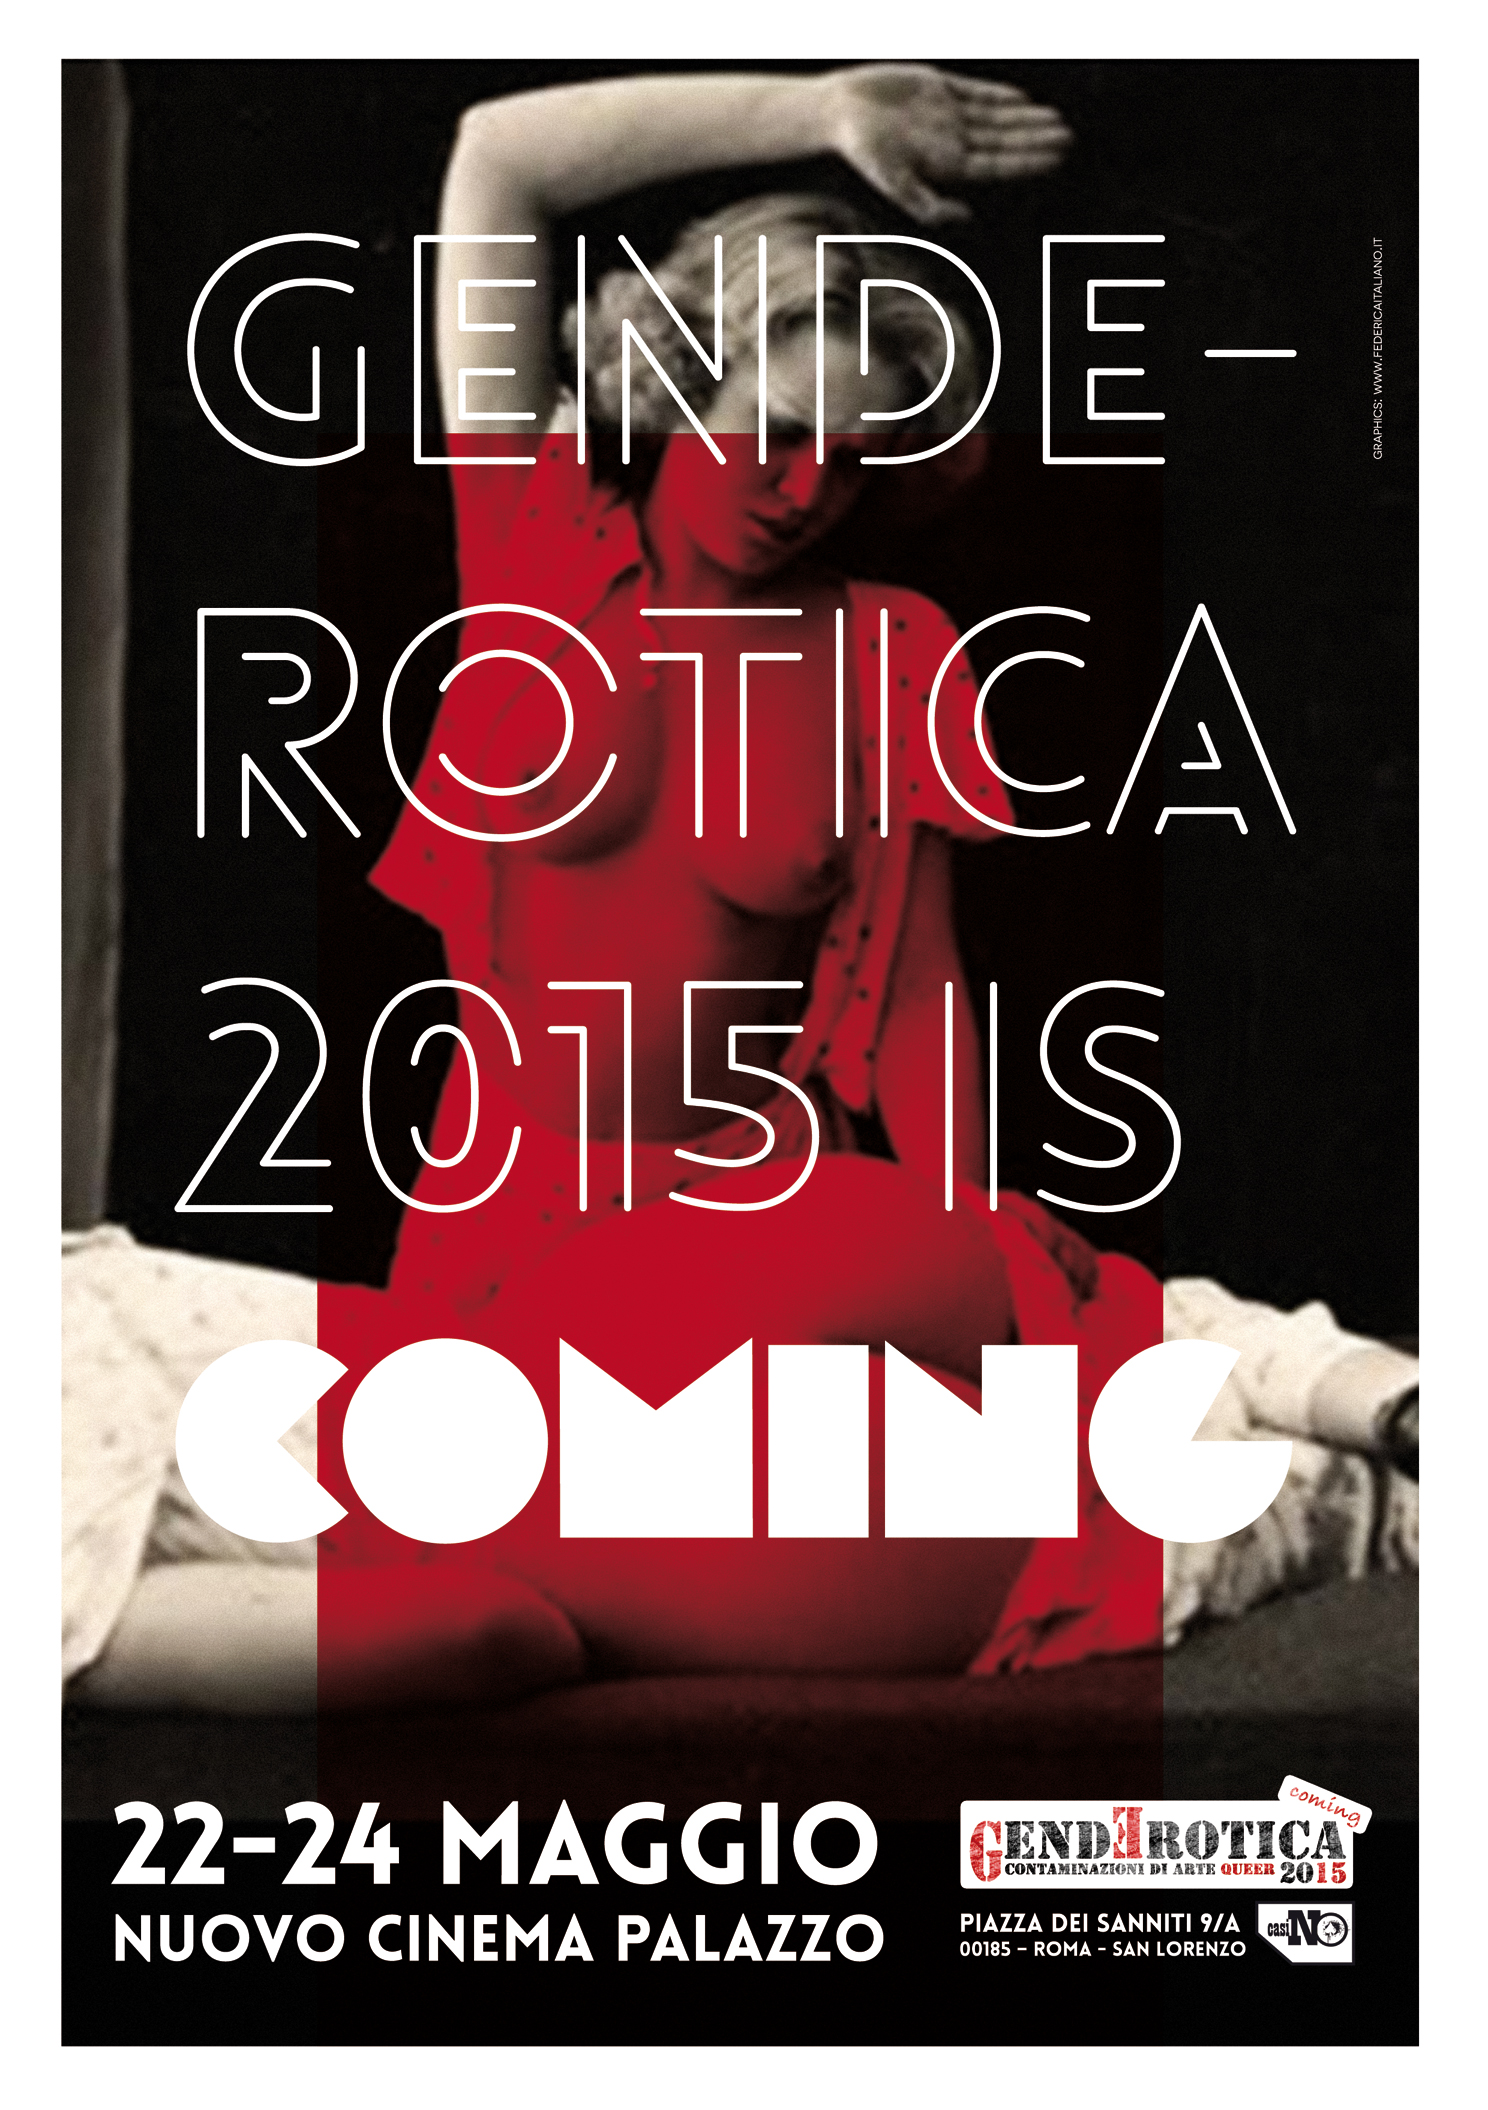 GendErotica 2015 is... coming!